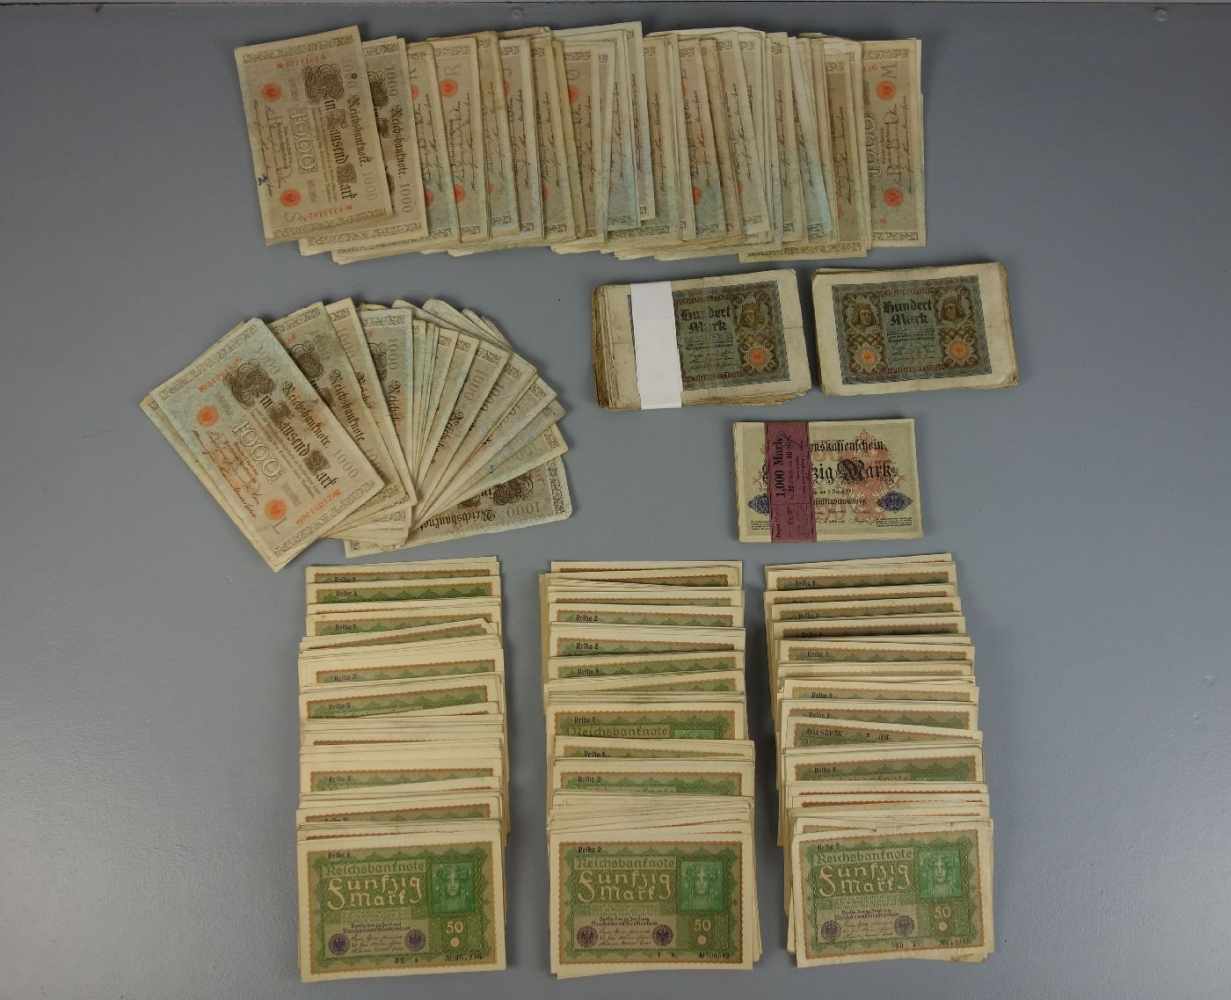 GROSSES KONVOLUT PAPIERGELDSCHEINE / bank notes, Deutsches Reich von 1910 - 1920. Beinhaltet ca. 350